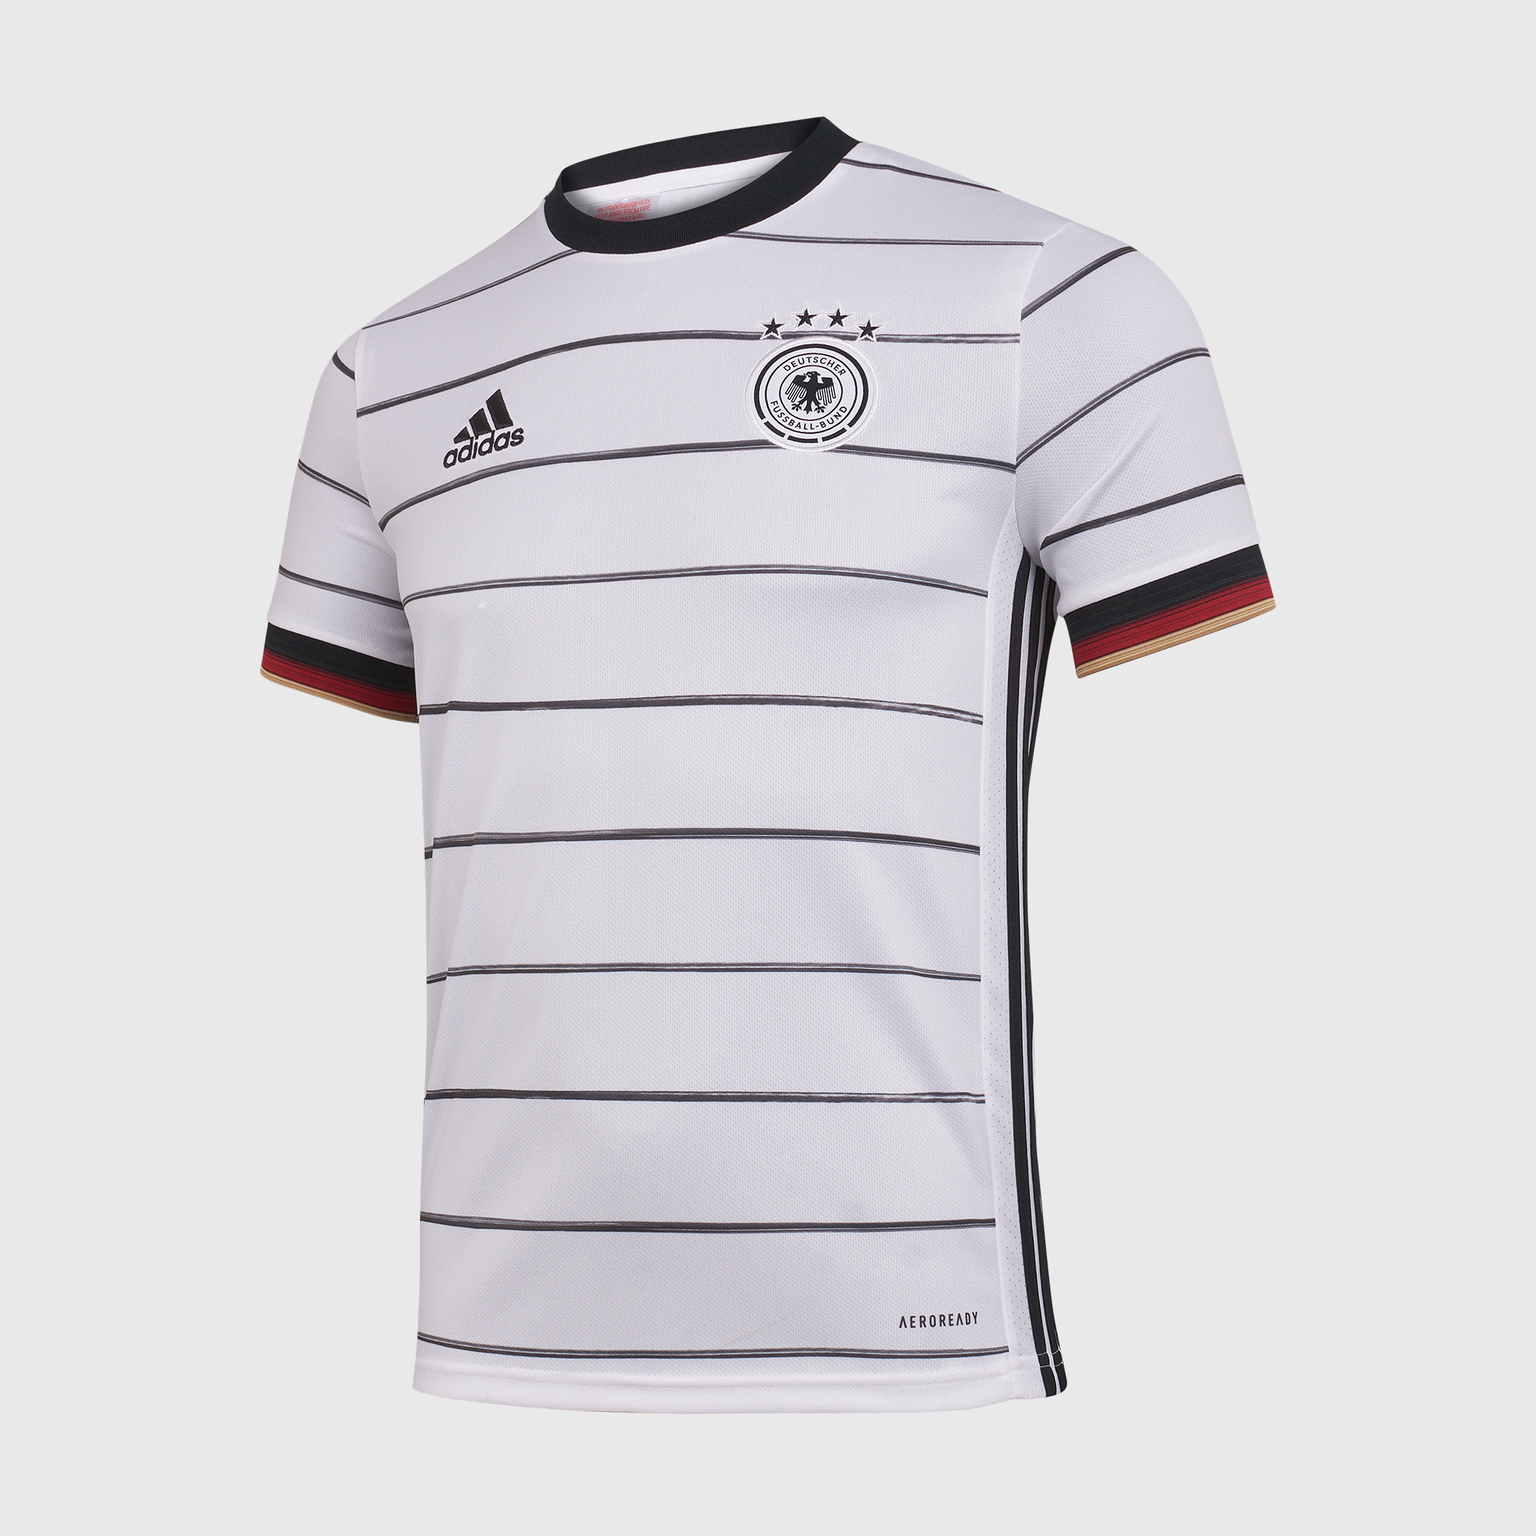 Футболка домашняя подростковая Adidas сборной Германии сезон 2021/22